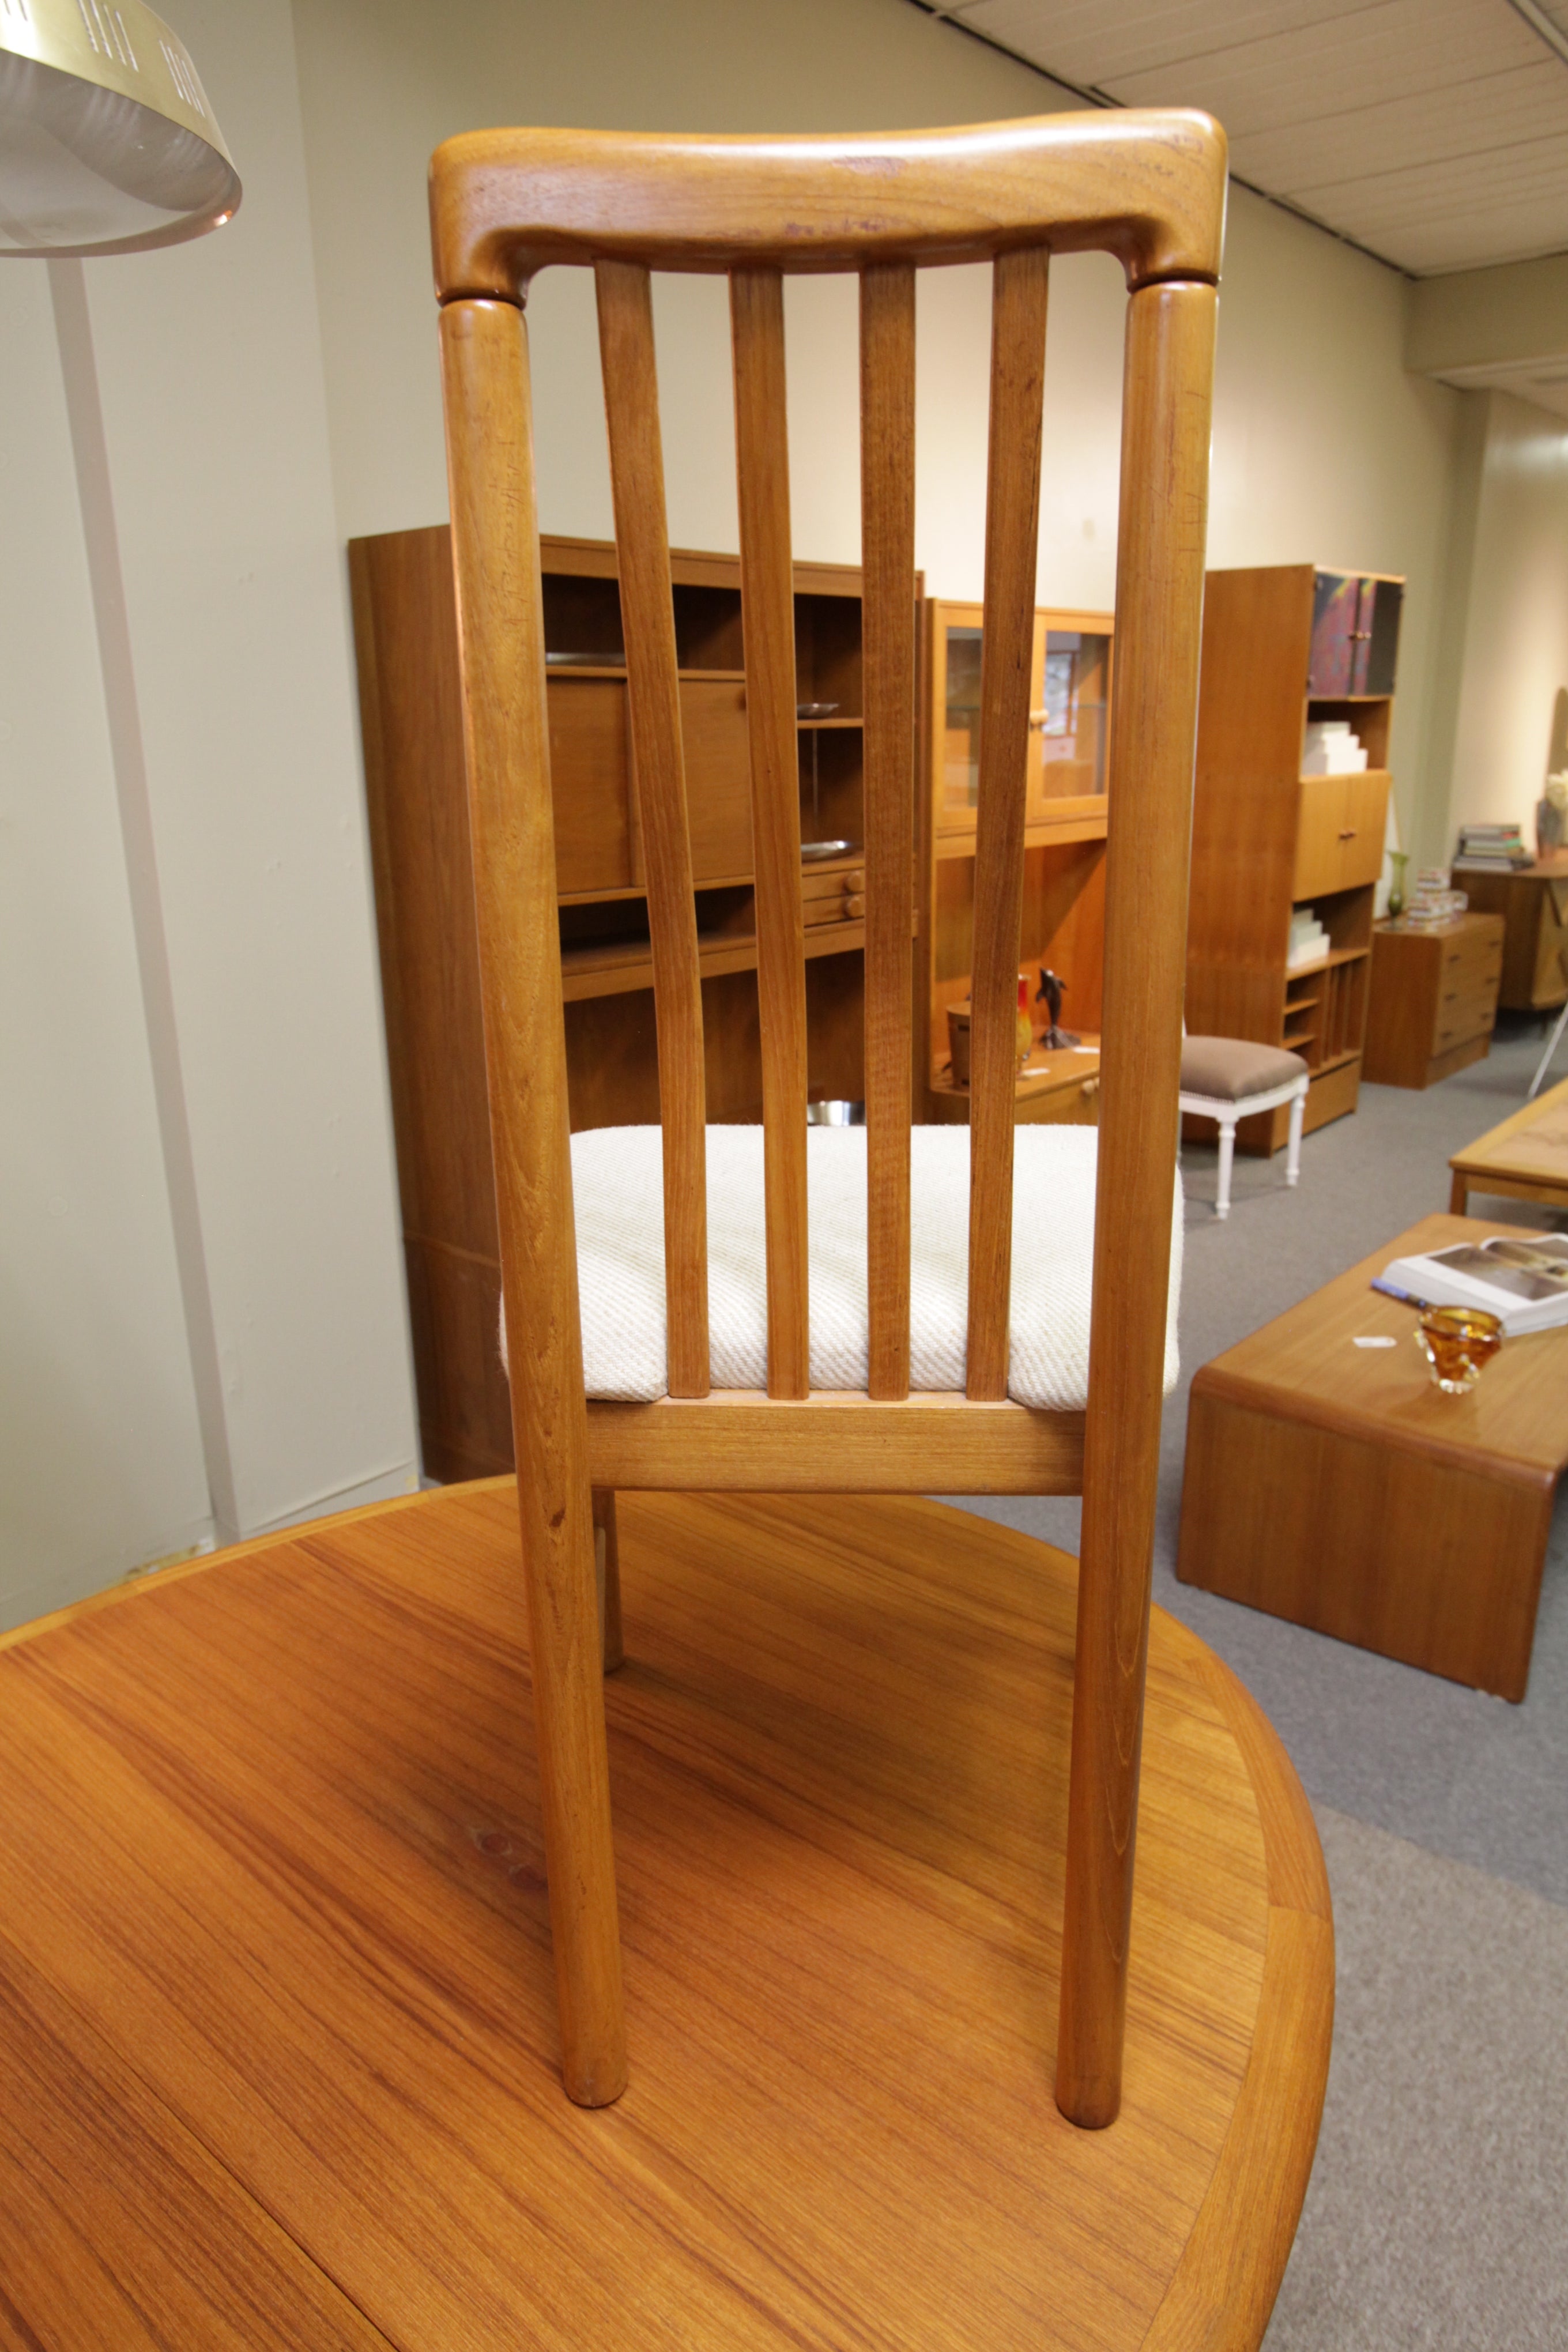 Set of 8 Vintage Benny Linden Teak Chairs